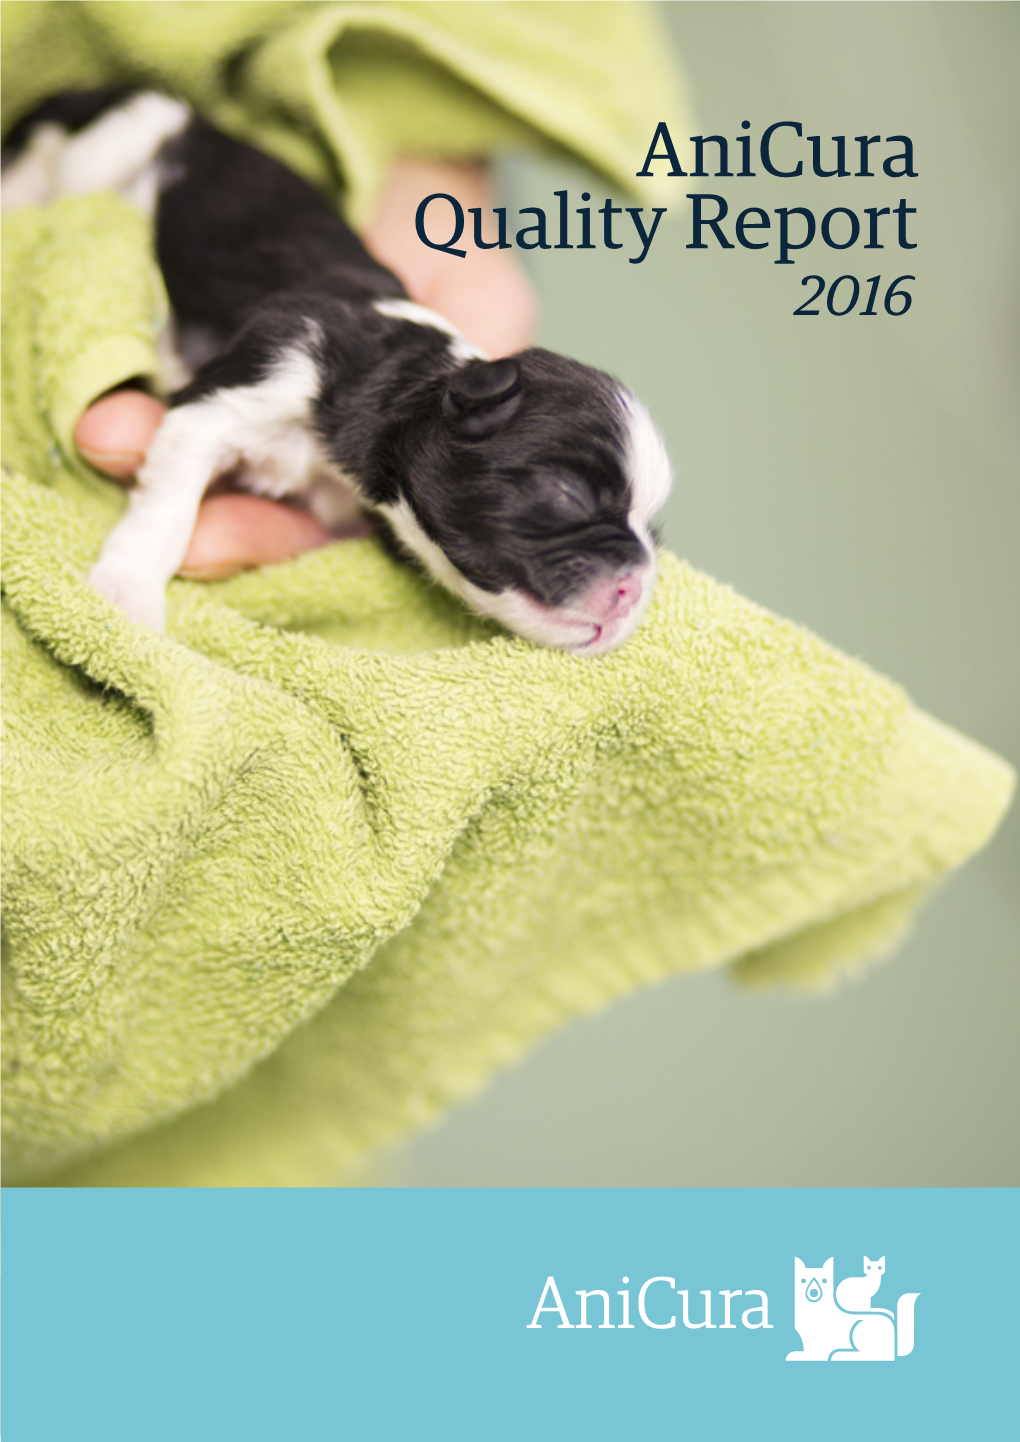 Anicura Quality Report 2016 2 Anicura Quality Report 2016 Contents